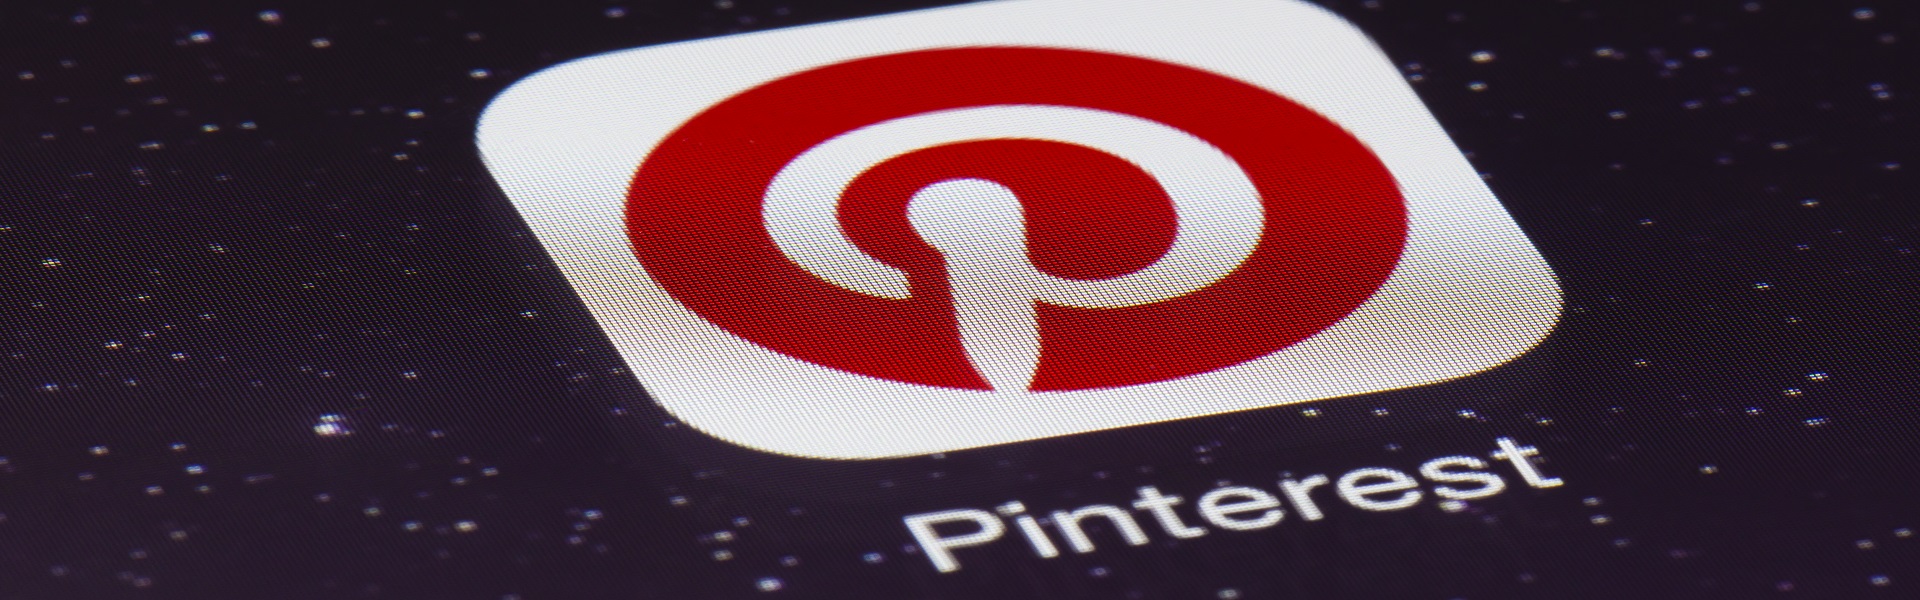 7 cách tăng doanh số nhờ Pinterest trong kinh doanh online (P1)